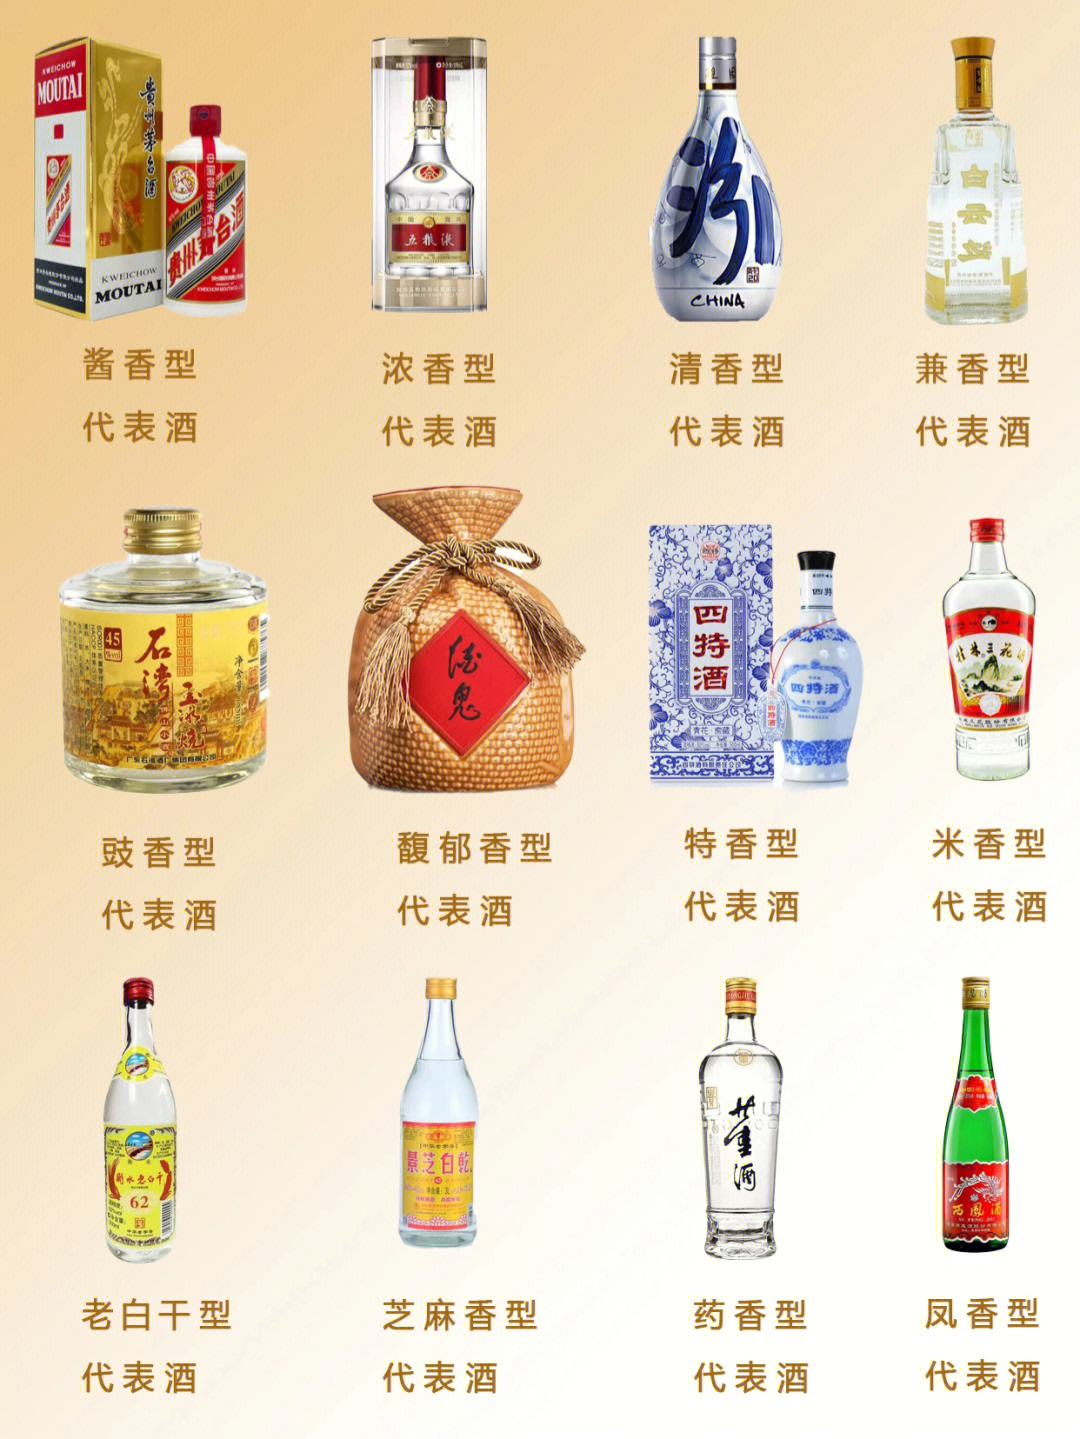 中国的白酒自元朝至今有近千年的历史,也是世界上六大蒸馏酒之首,多种